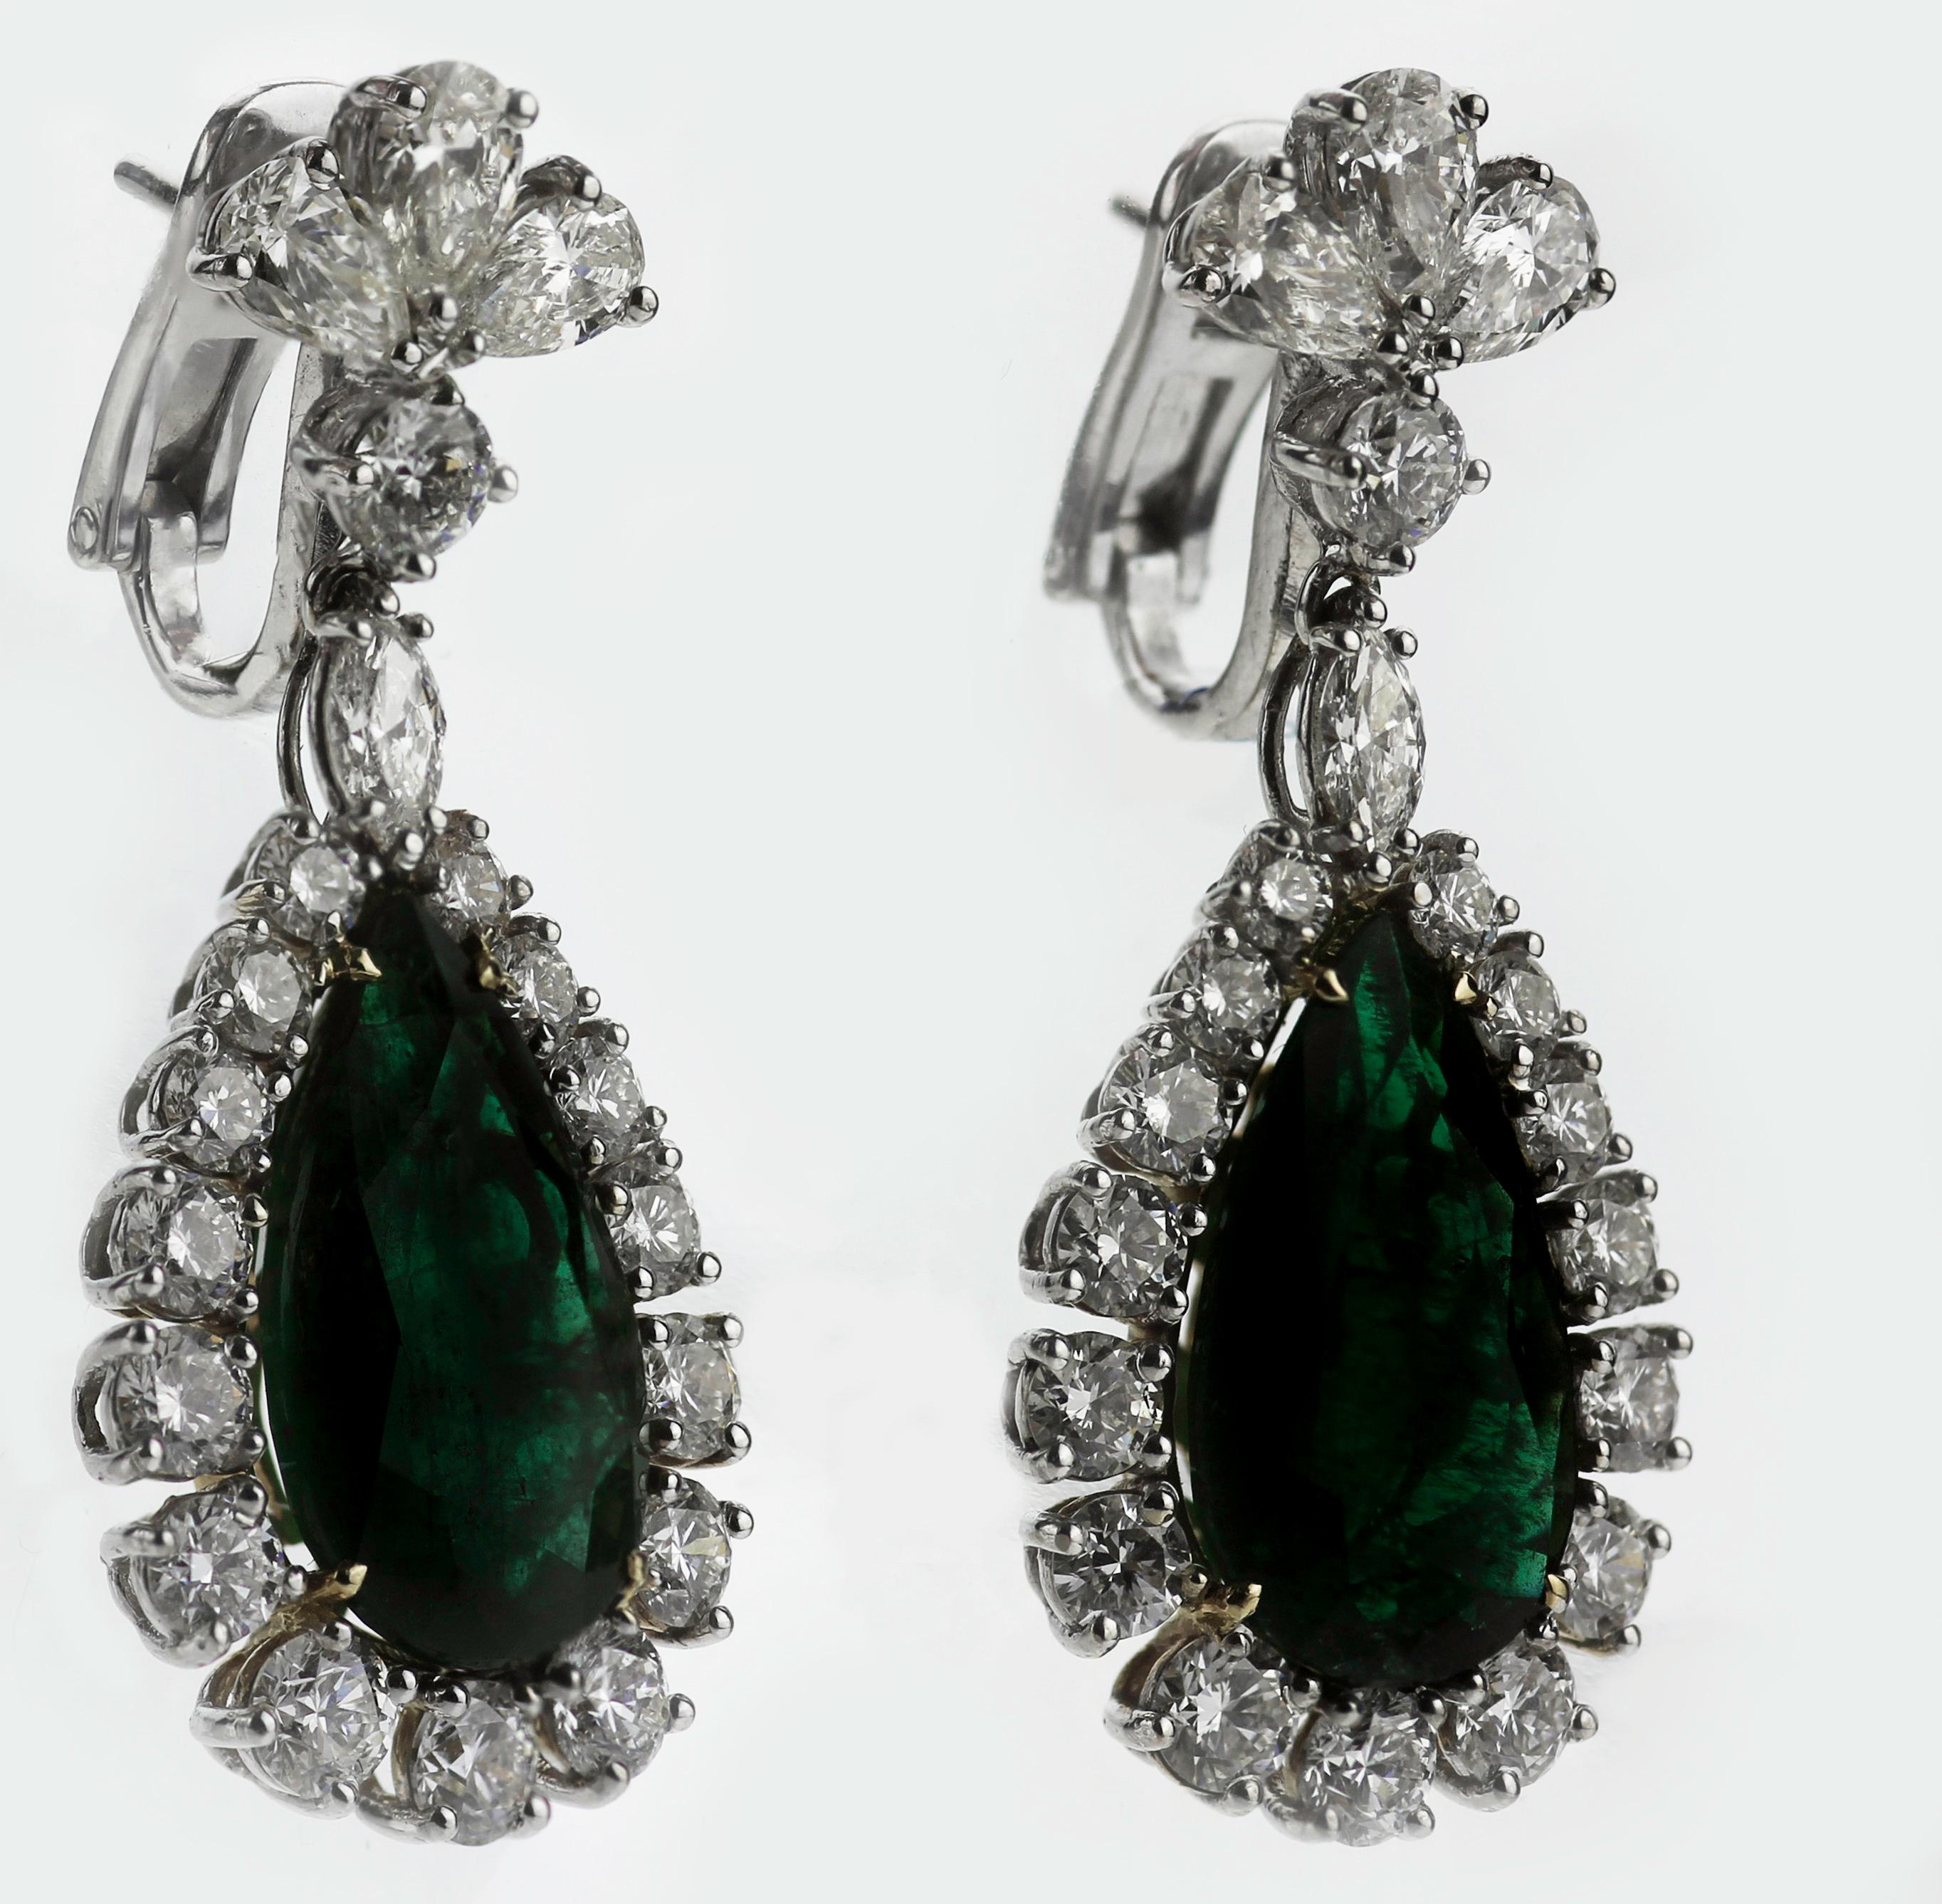 Ein Paar Smaragd- und Diamanttropfenohrringe im berühmten Elizabeth Taylor Stil. 
Ein tropfenförmiger Smaragd, umgeben von runden Diamanten im Brillantschliff, die von einer sichelförmigen Kette aus mehreren Diamanten baumeln, wobei jeder einzelne